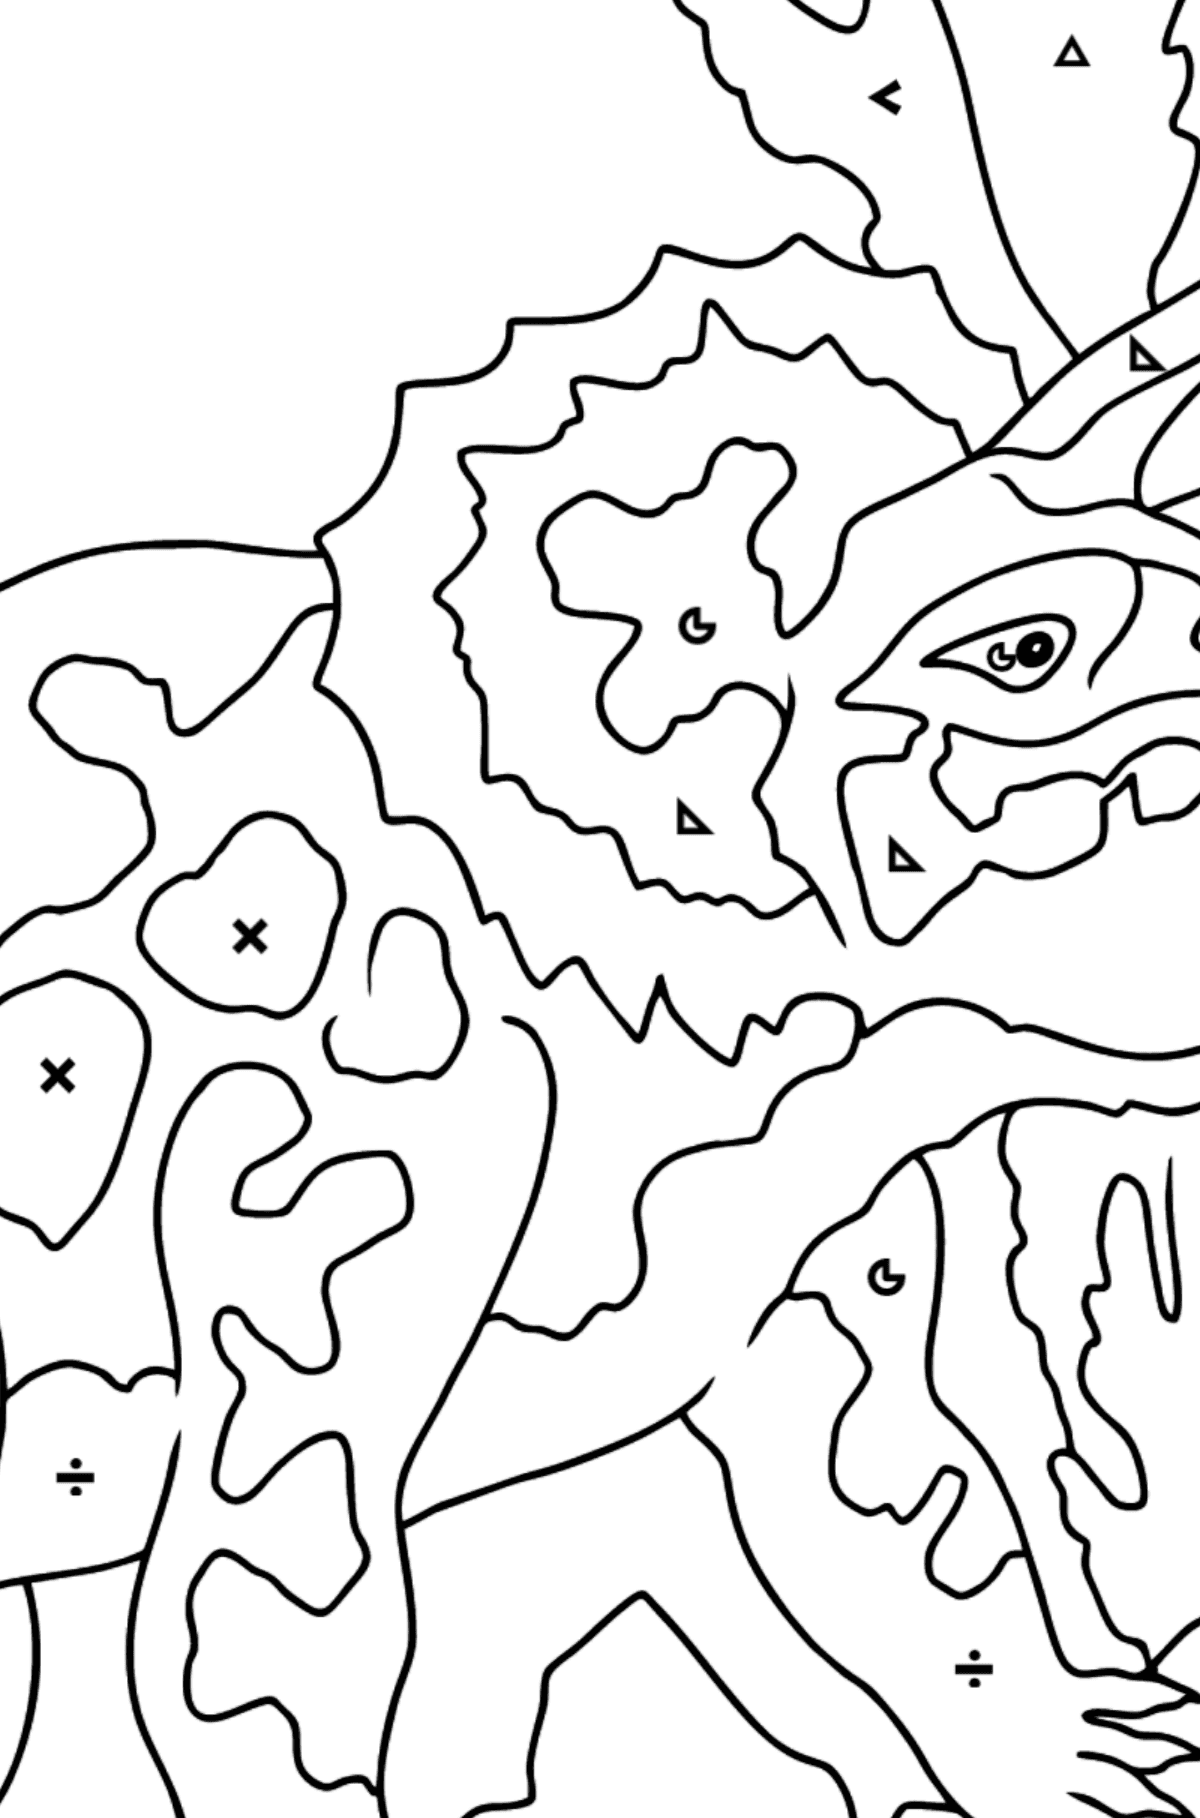 Desenho para colorir de triceratops - Colorir por Símbolos para Crianças